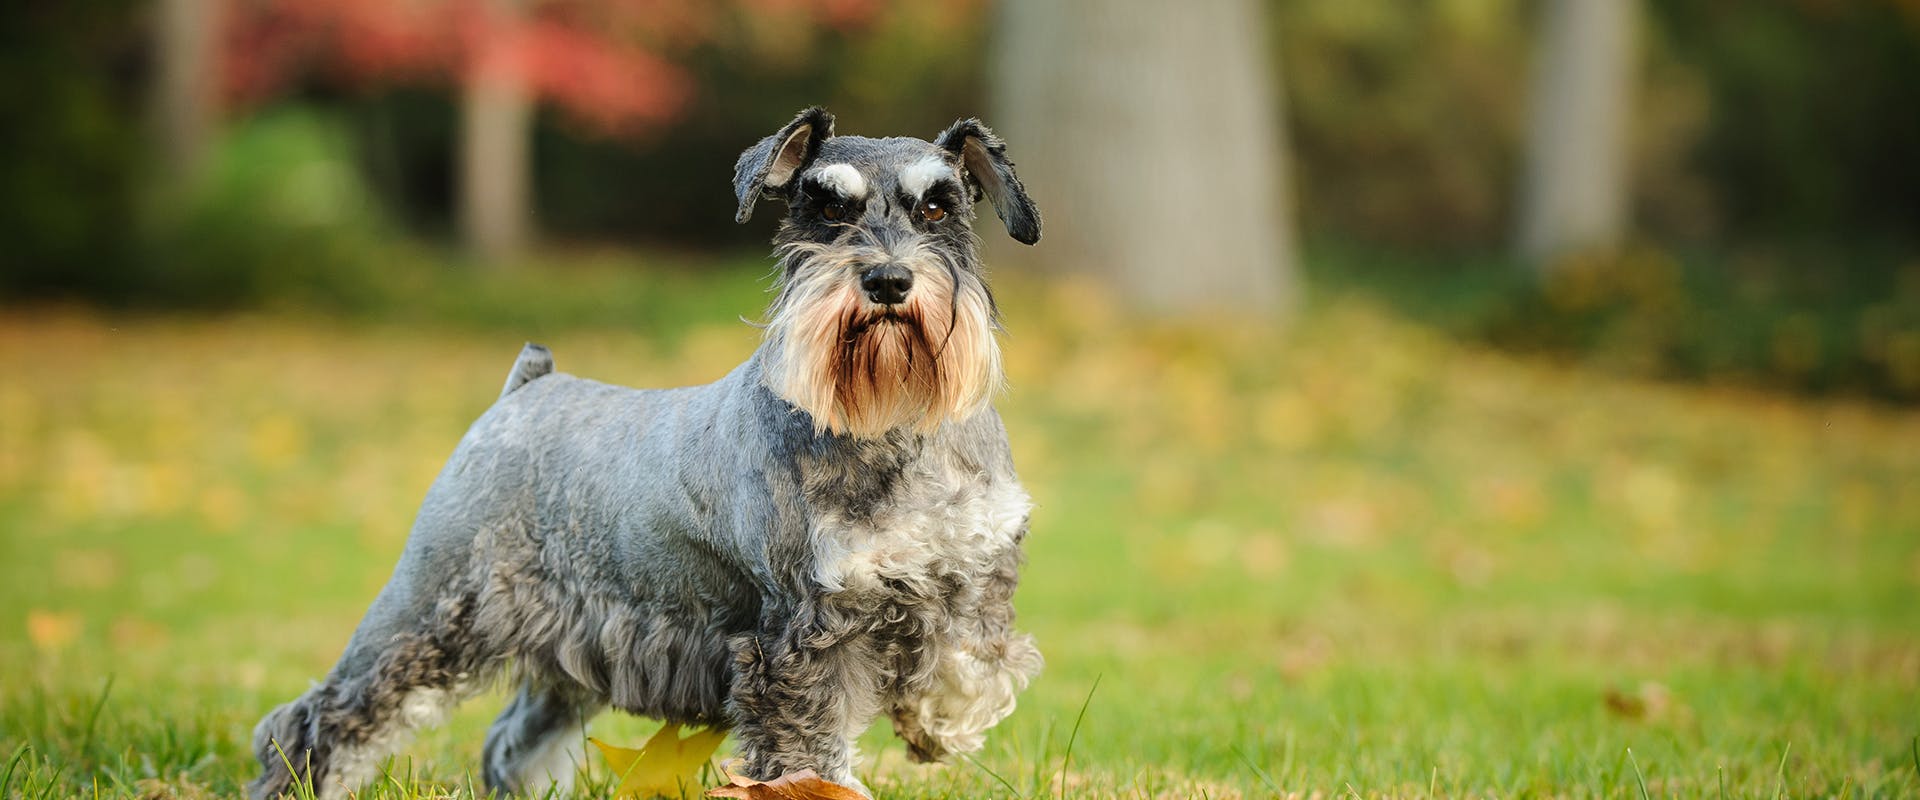 A Miniature Schnauzer dog standing outdoors